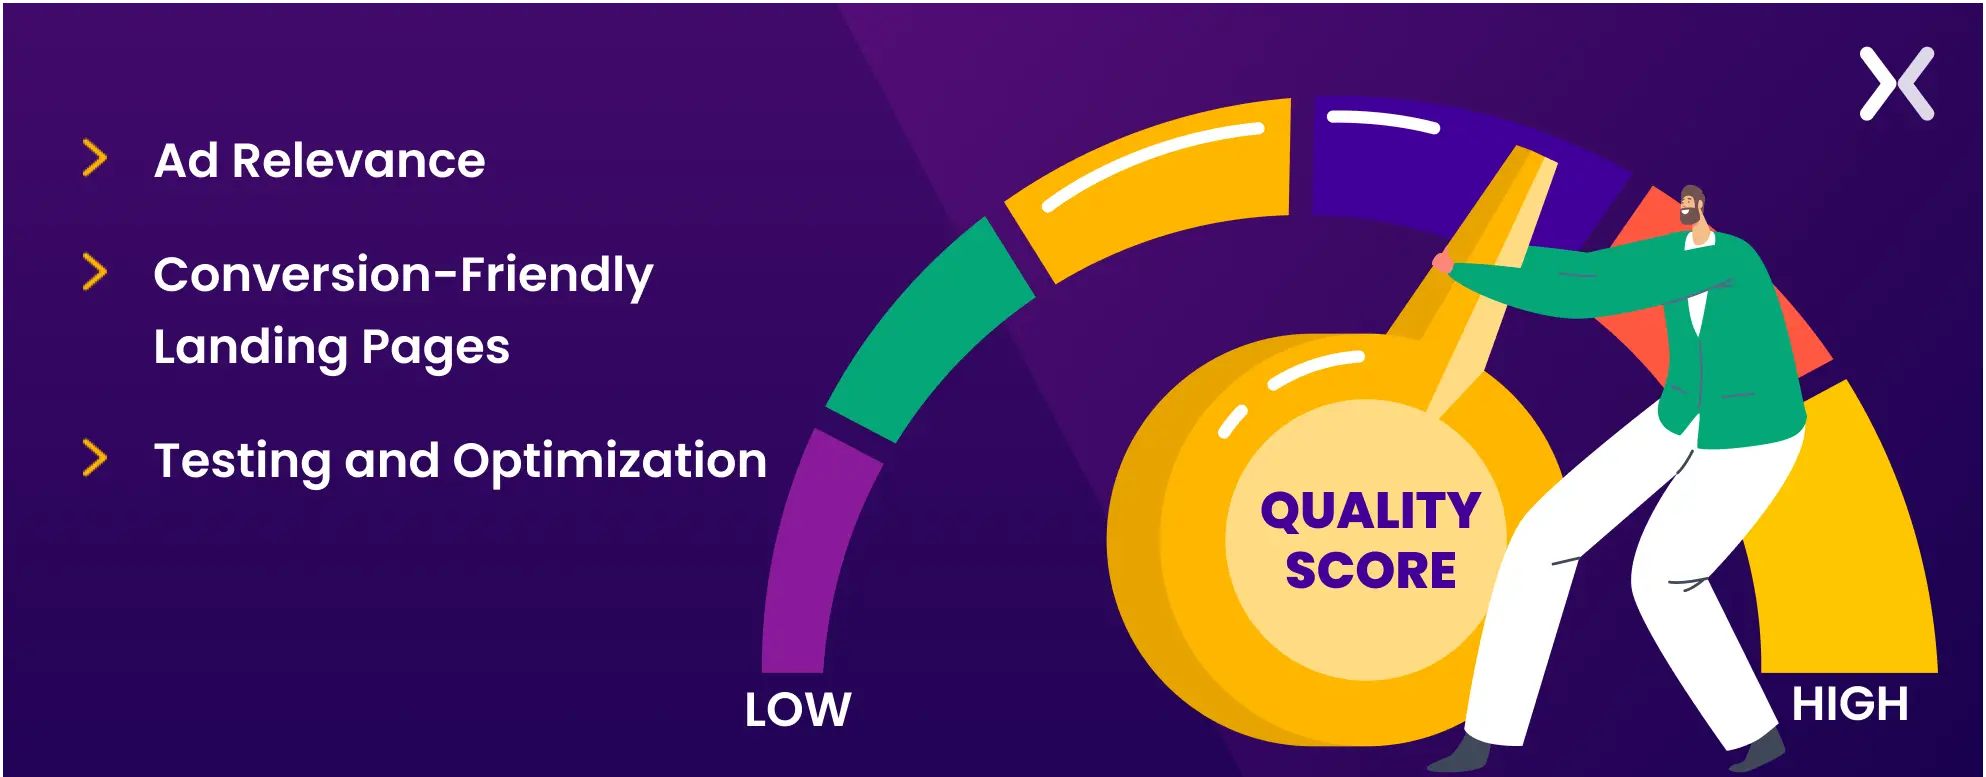 factors-affecting-quality-score.webp